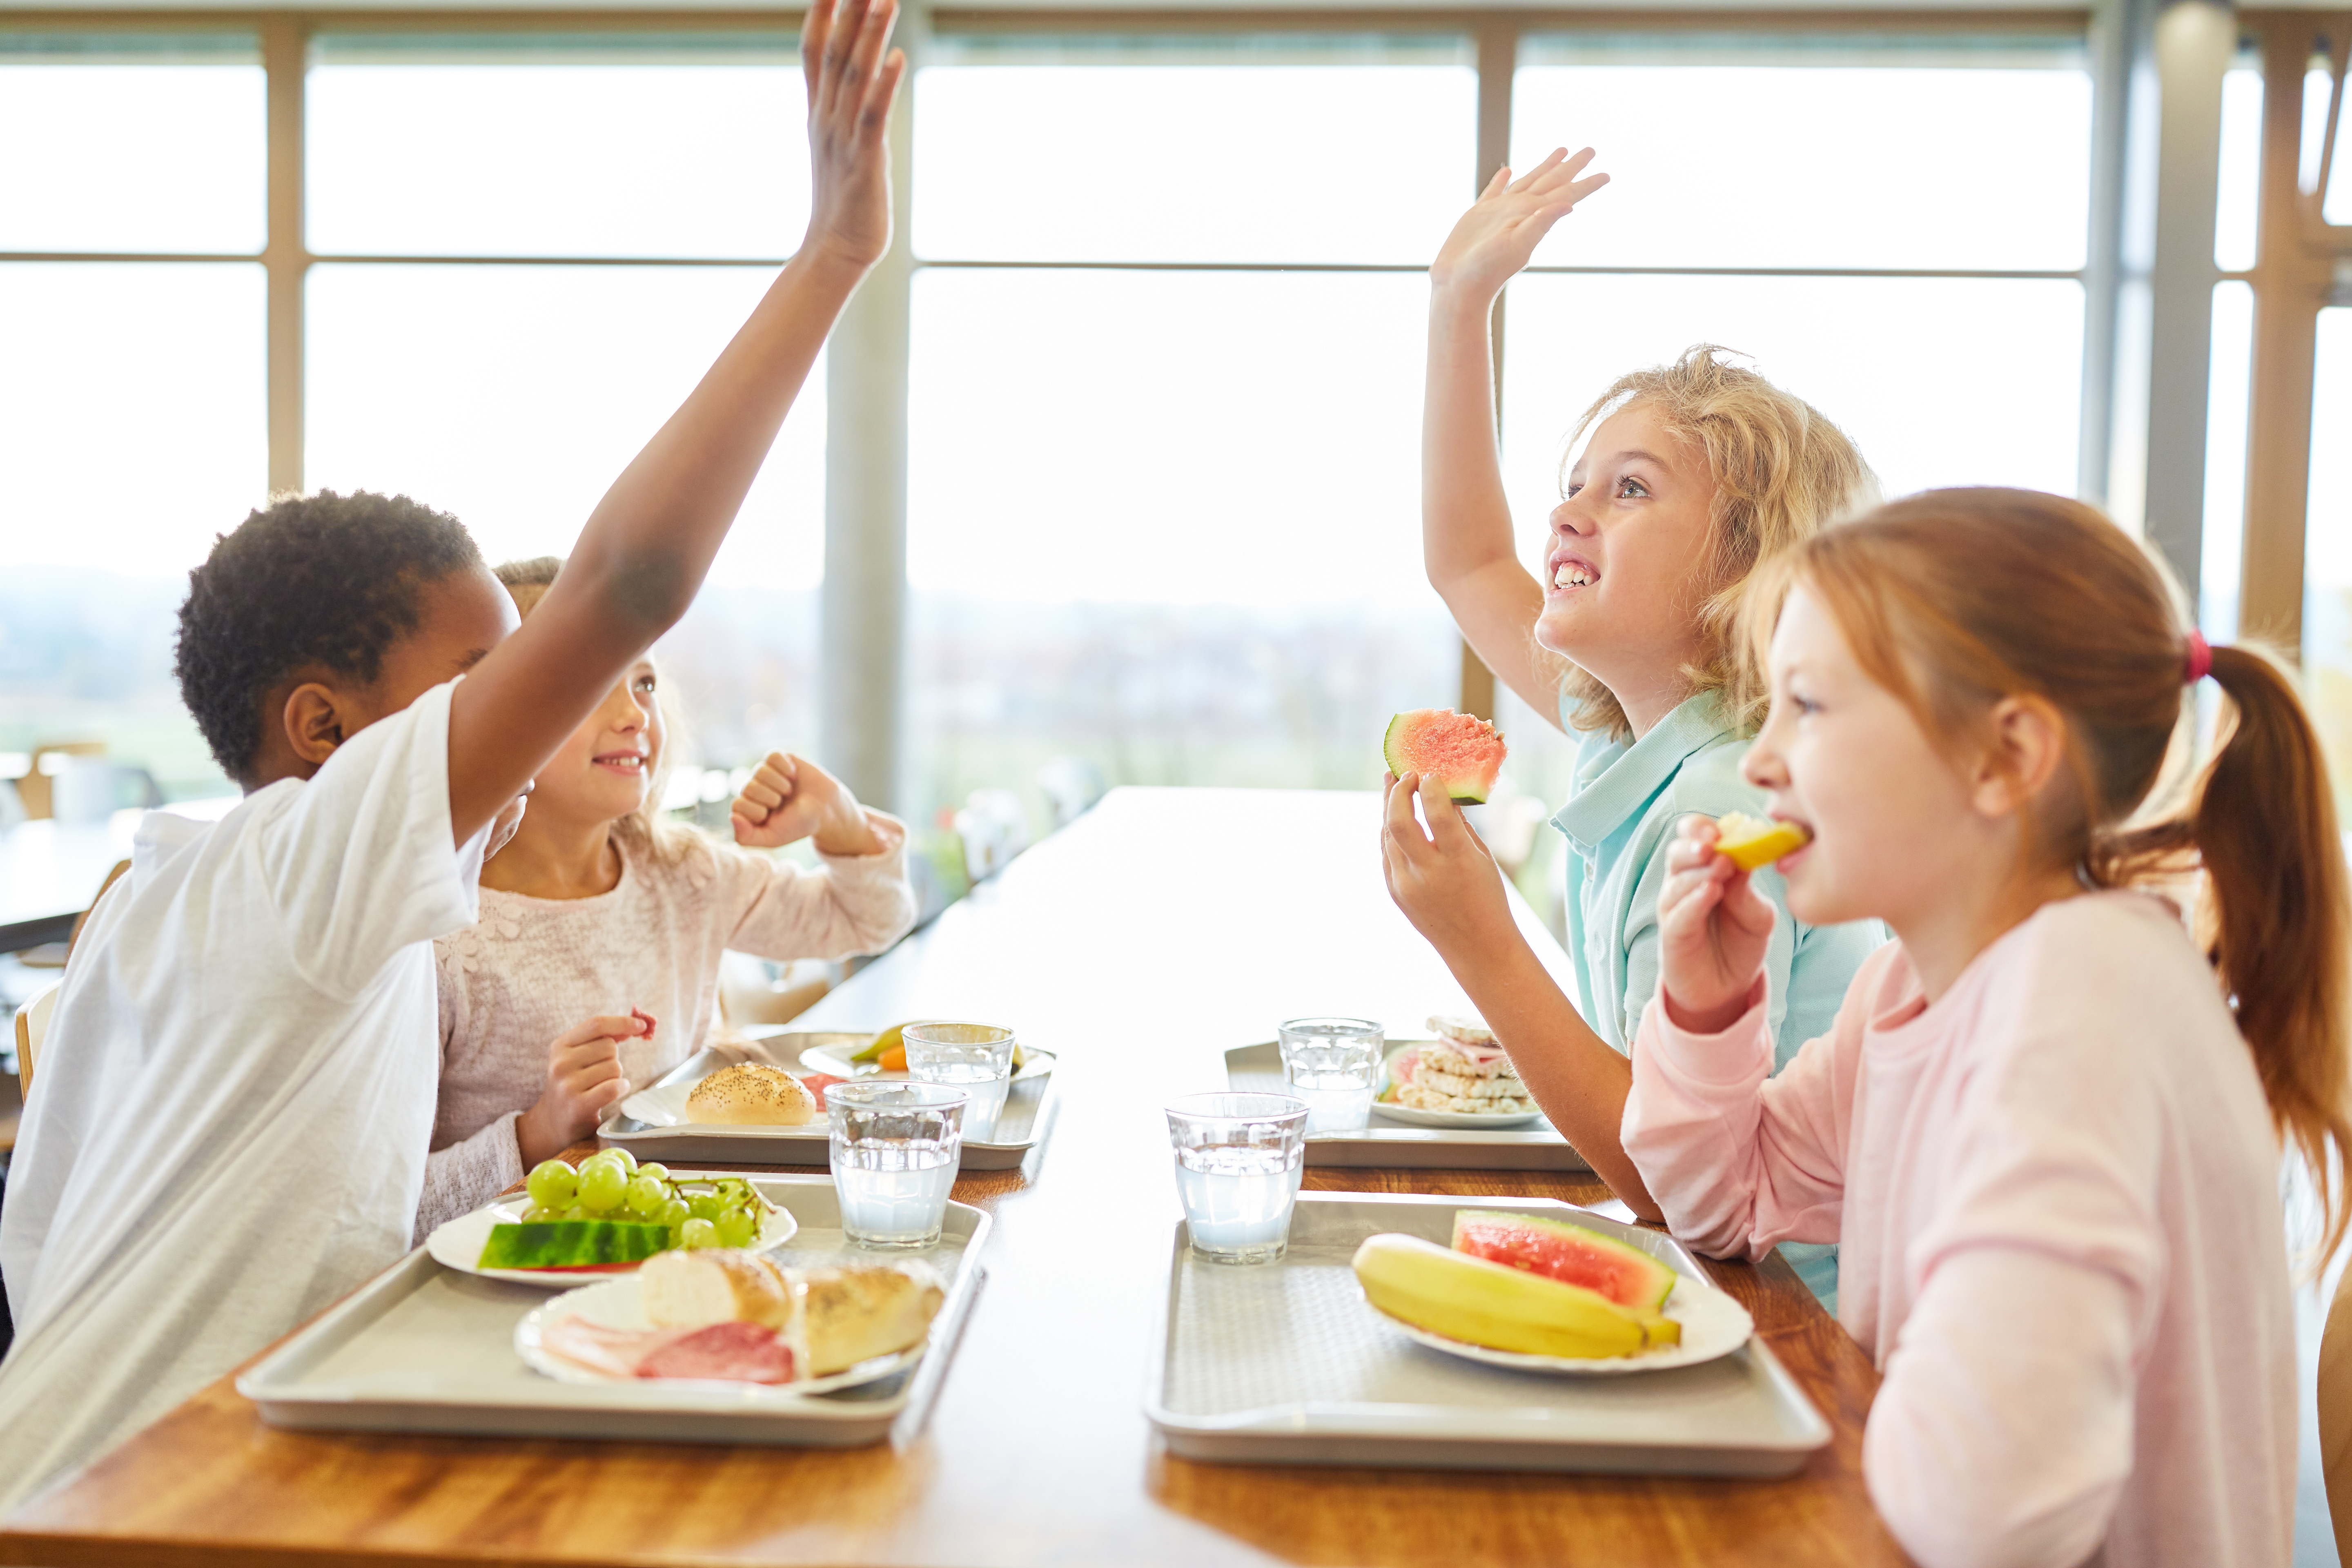 Bambini mangiano a tavola in una mensa scolastica; concept: scuola, mense scolastiche